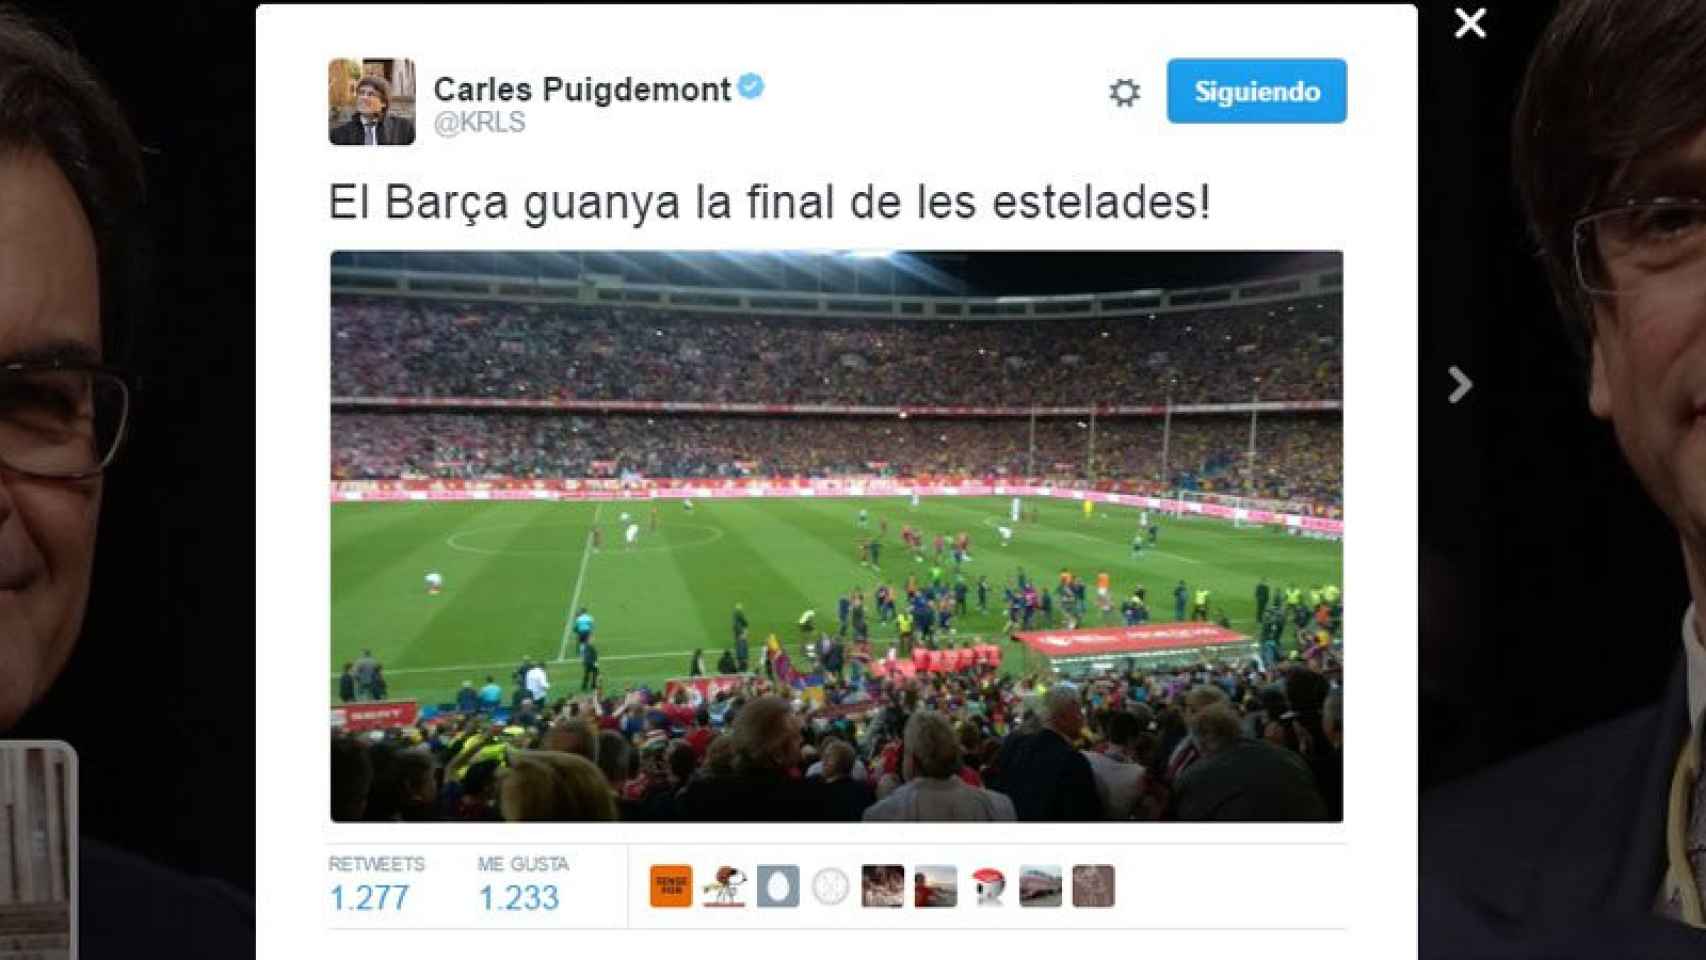 Tuit de Carles Puigdemont tildando la final de la Copa del Rey de este año como la final de las esteladas.